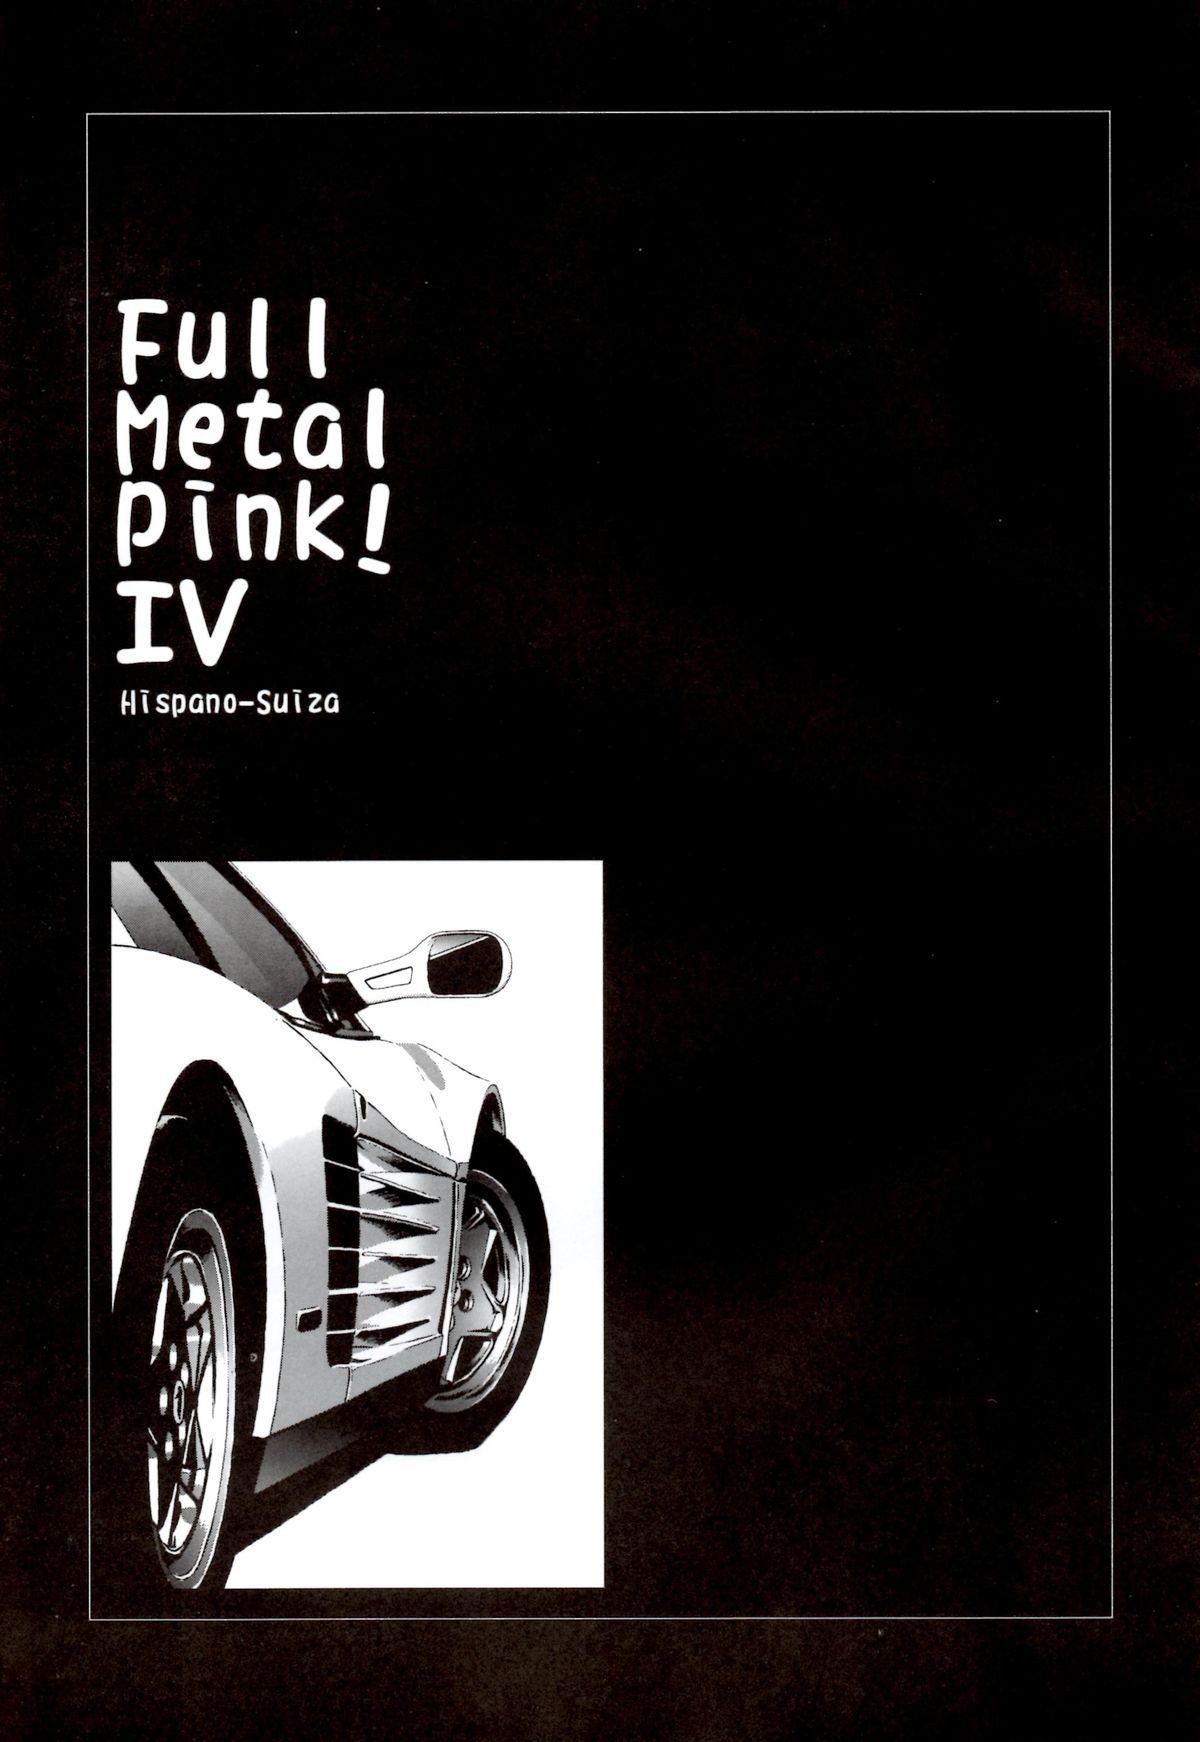 Full Metal Pink! IV 11